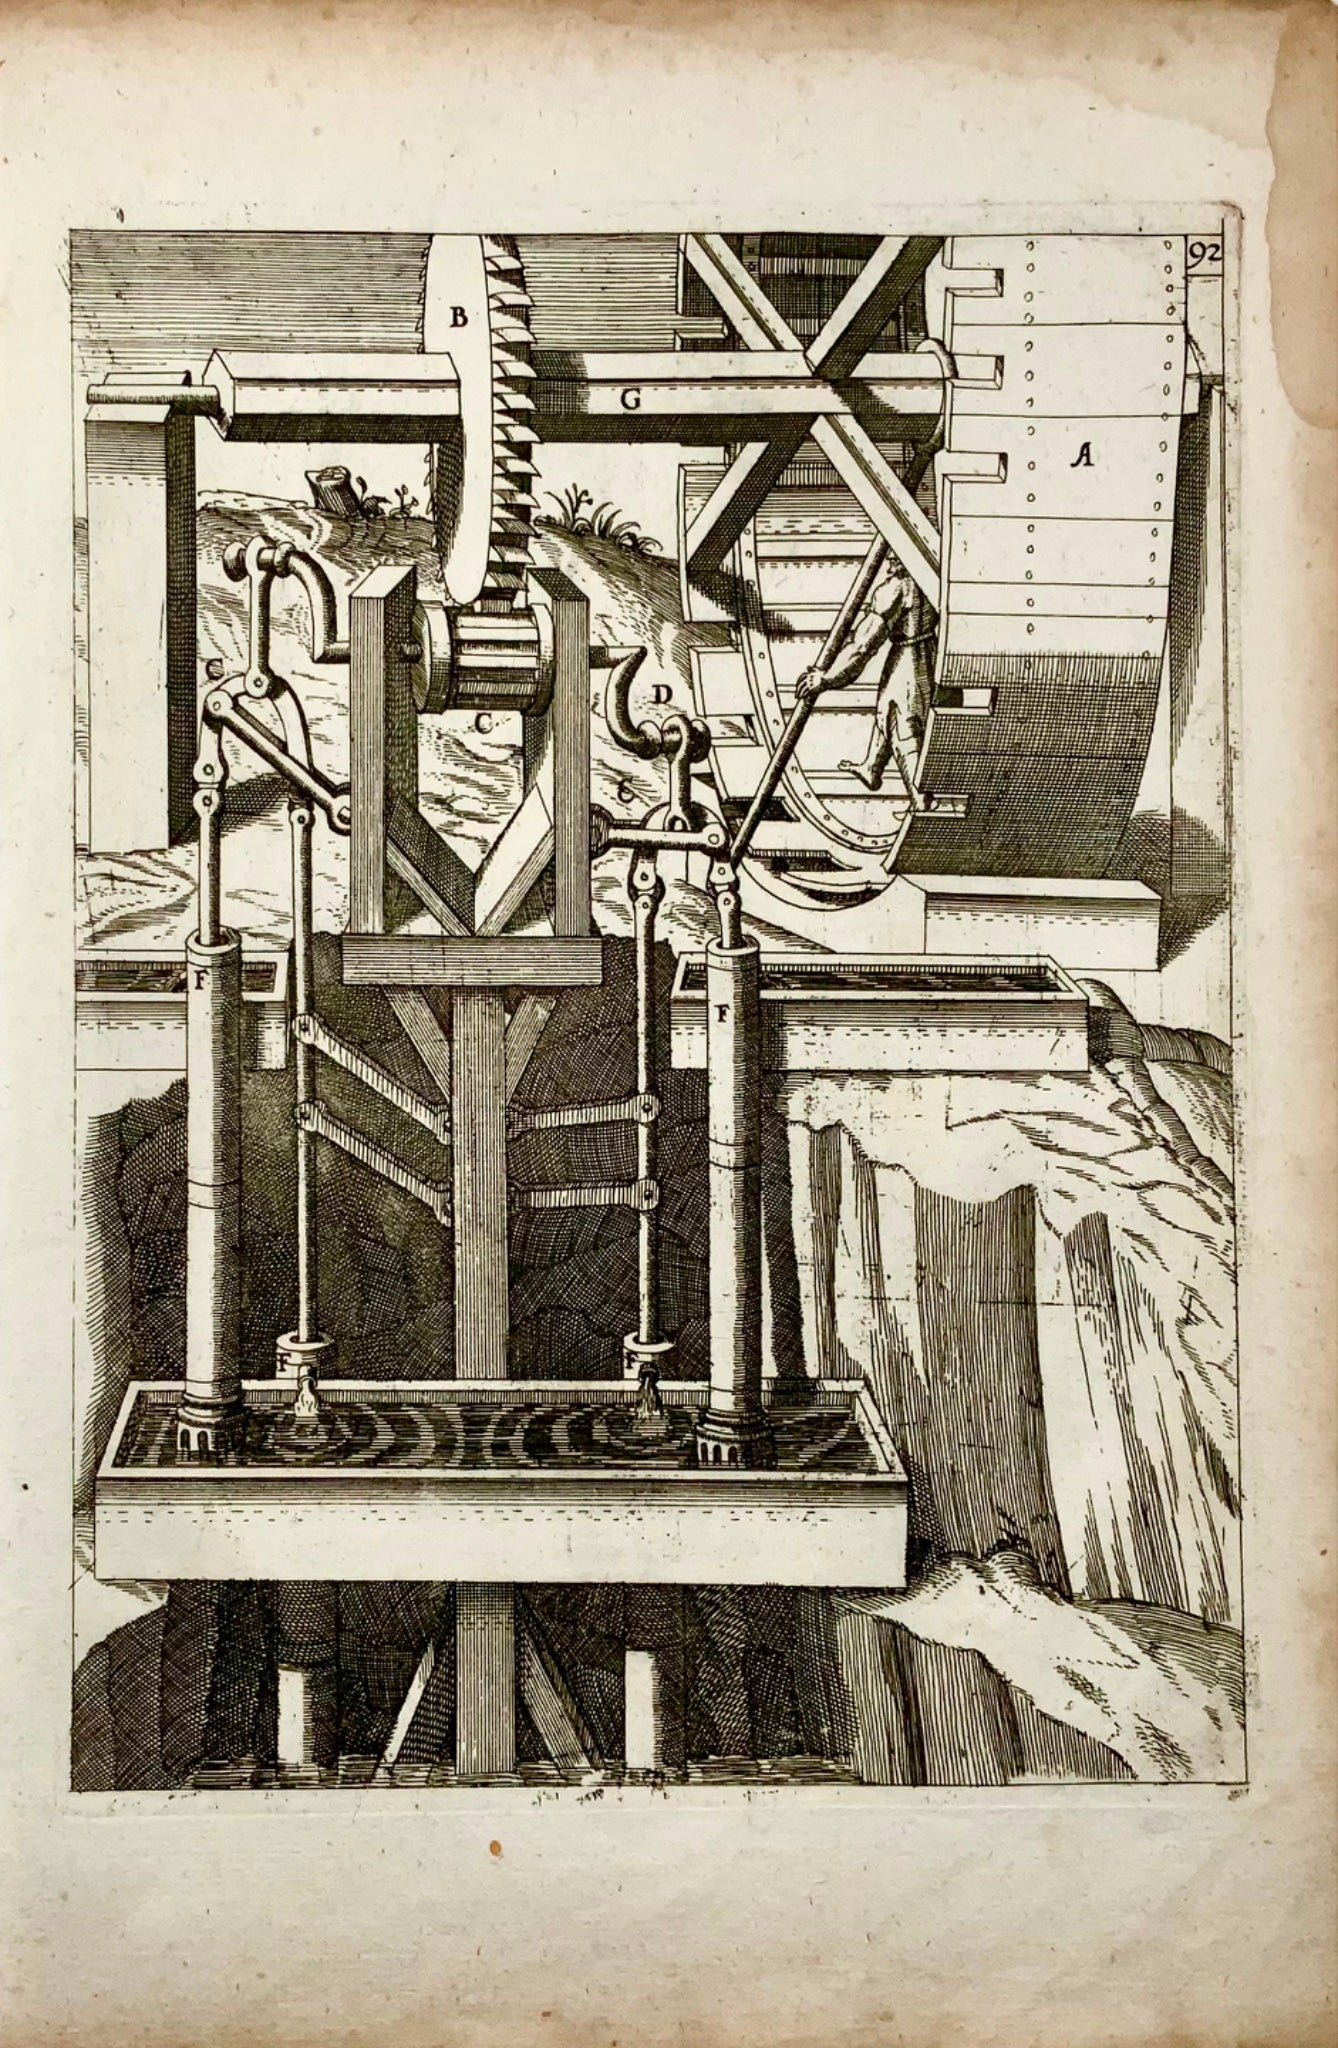 1662 Balth. Schwan; Boeckler, piston pump, water raising machine, technology